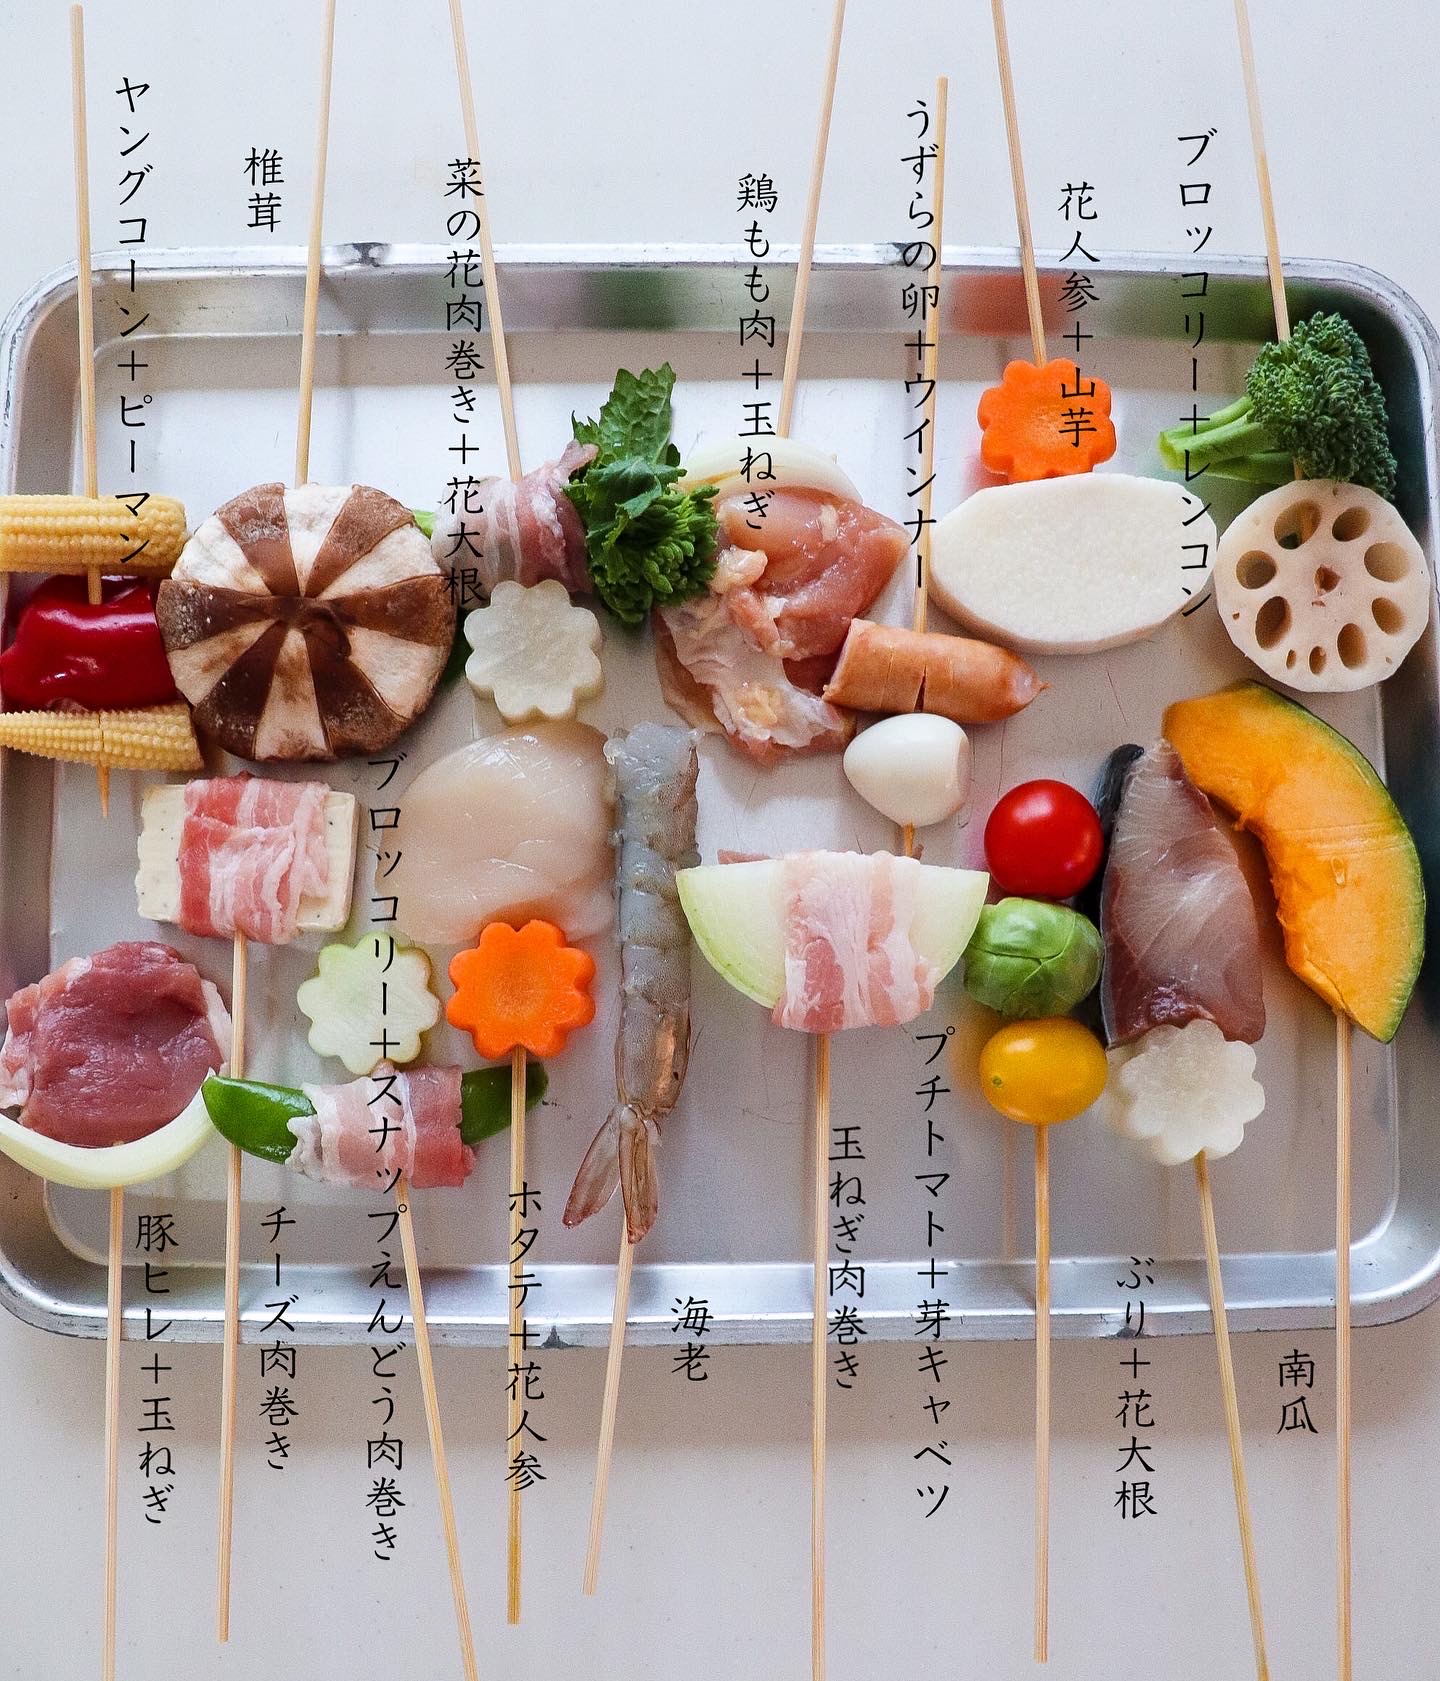 名店の味を再現 揚げたてアツアツを食卓で楽しめる おうち串カツパーティー Rii Yahoo Japan クリエイターズプログラム